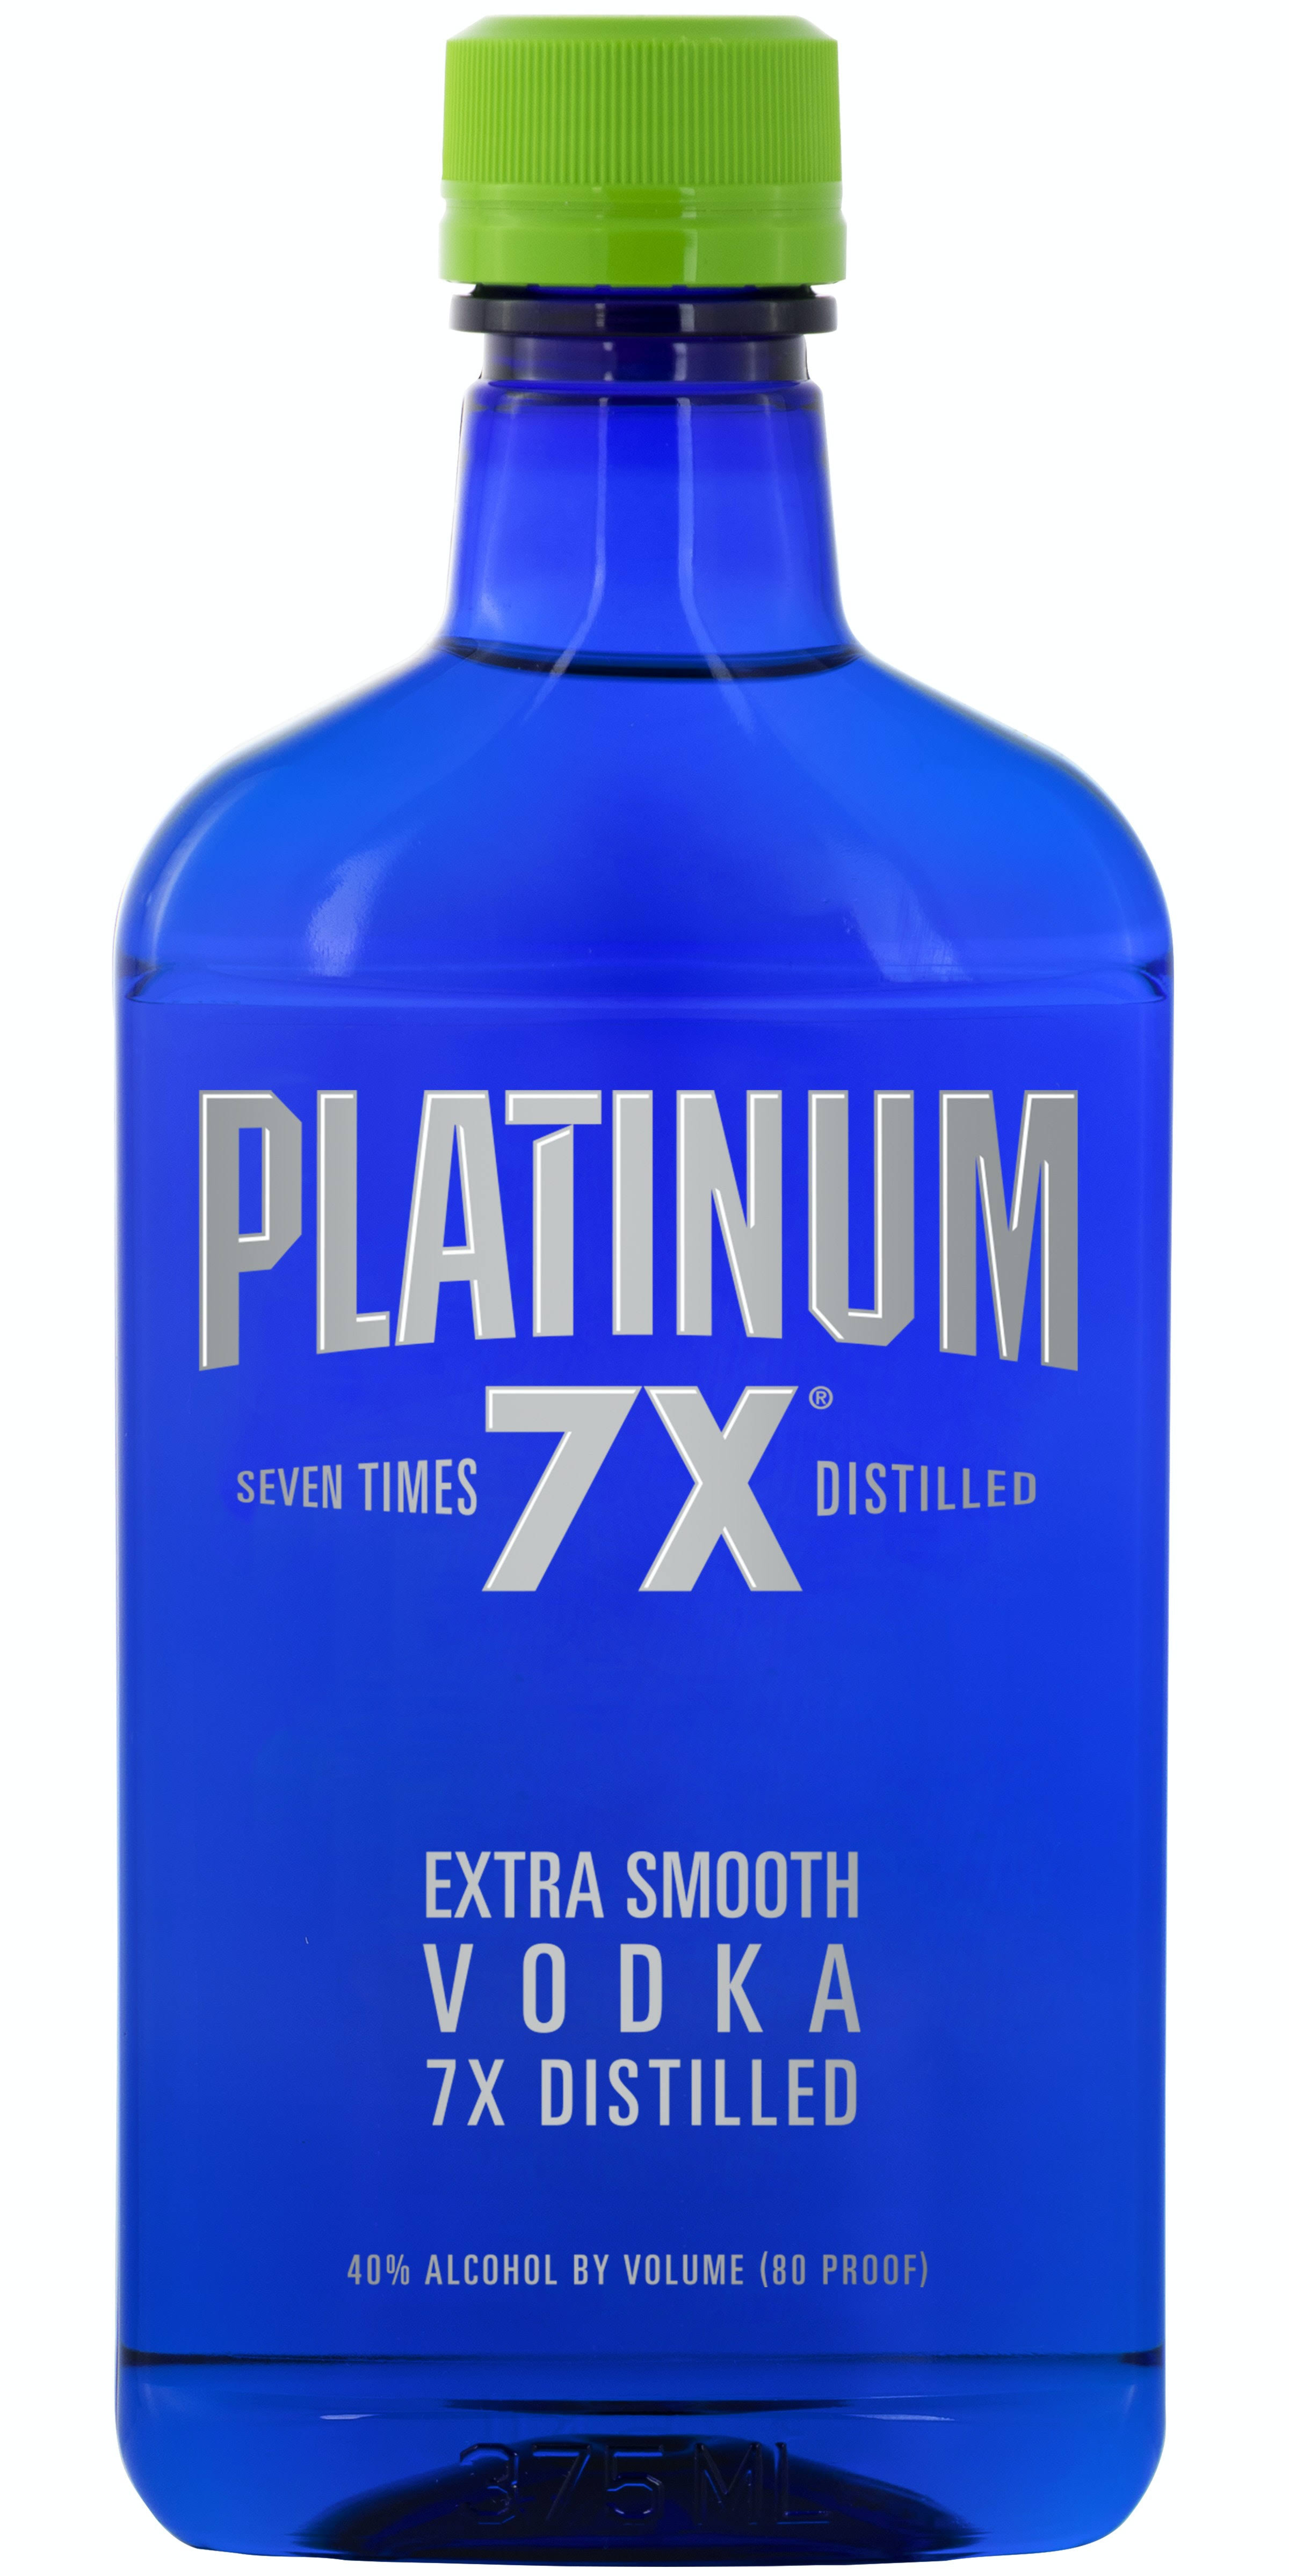 Platinum 7X Vodka, Extra Smooth, 7x Distilled - 375 ml